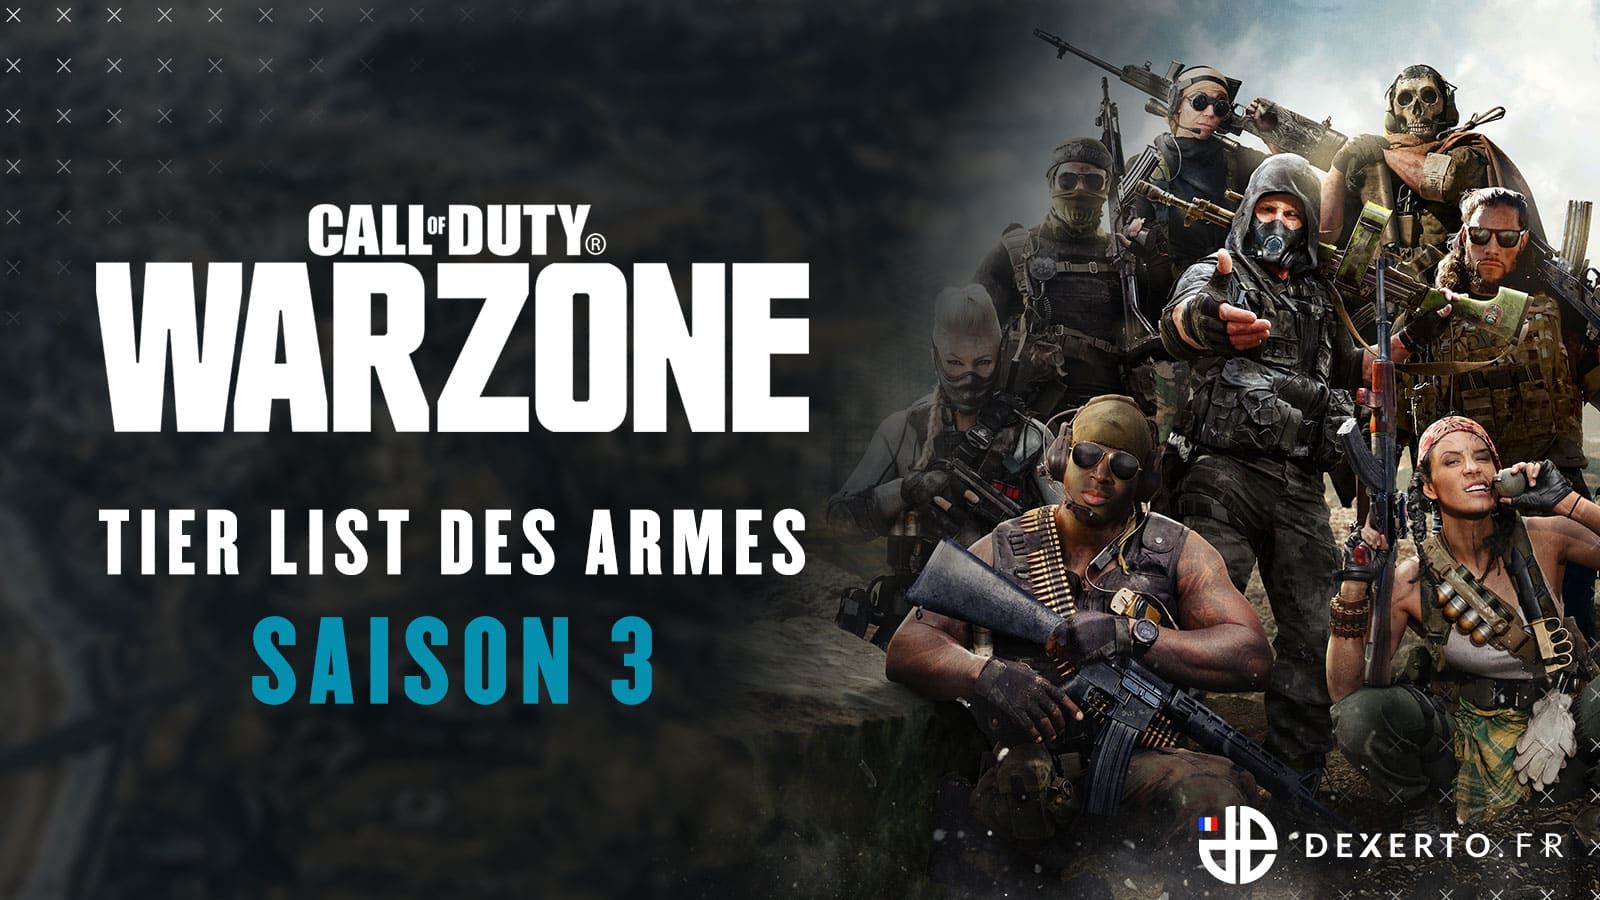 Les meilleures armes sur Warzone | Tier list Warzone Saison 3 - Dexerto.fr